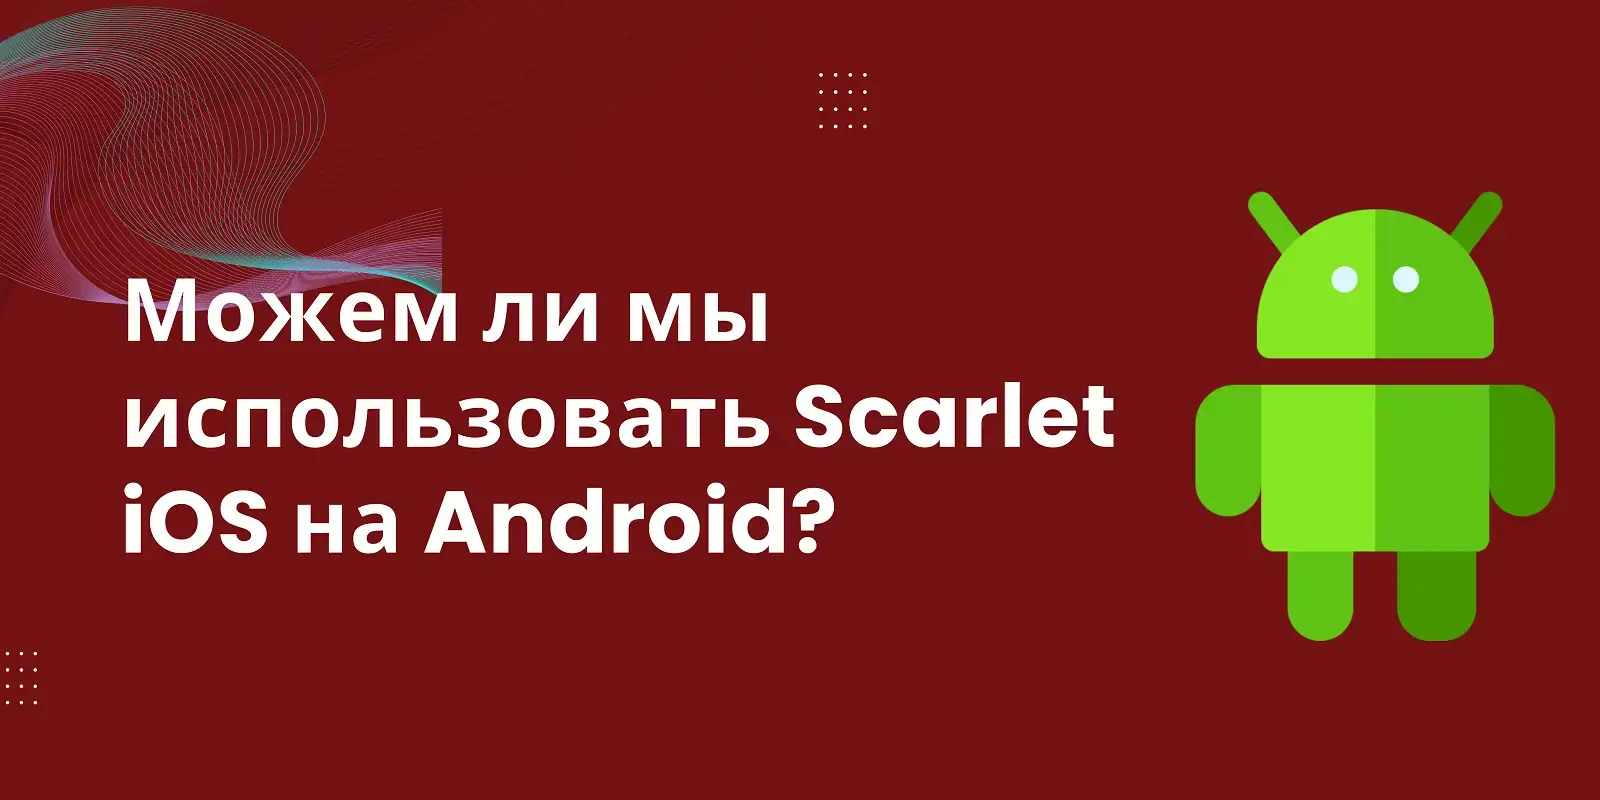 Можем ли мы использовать Scarlet iOS на Android?